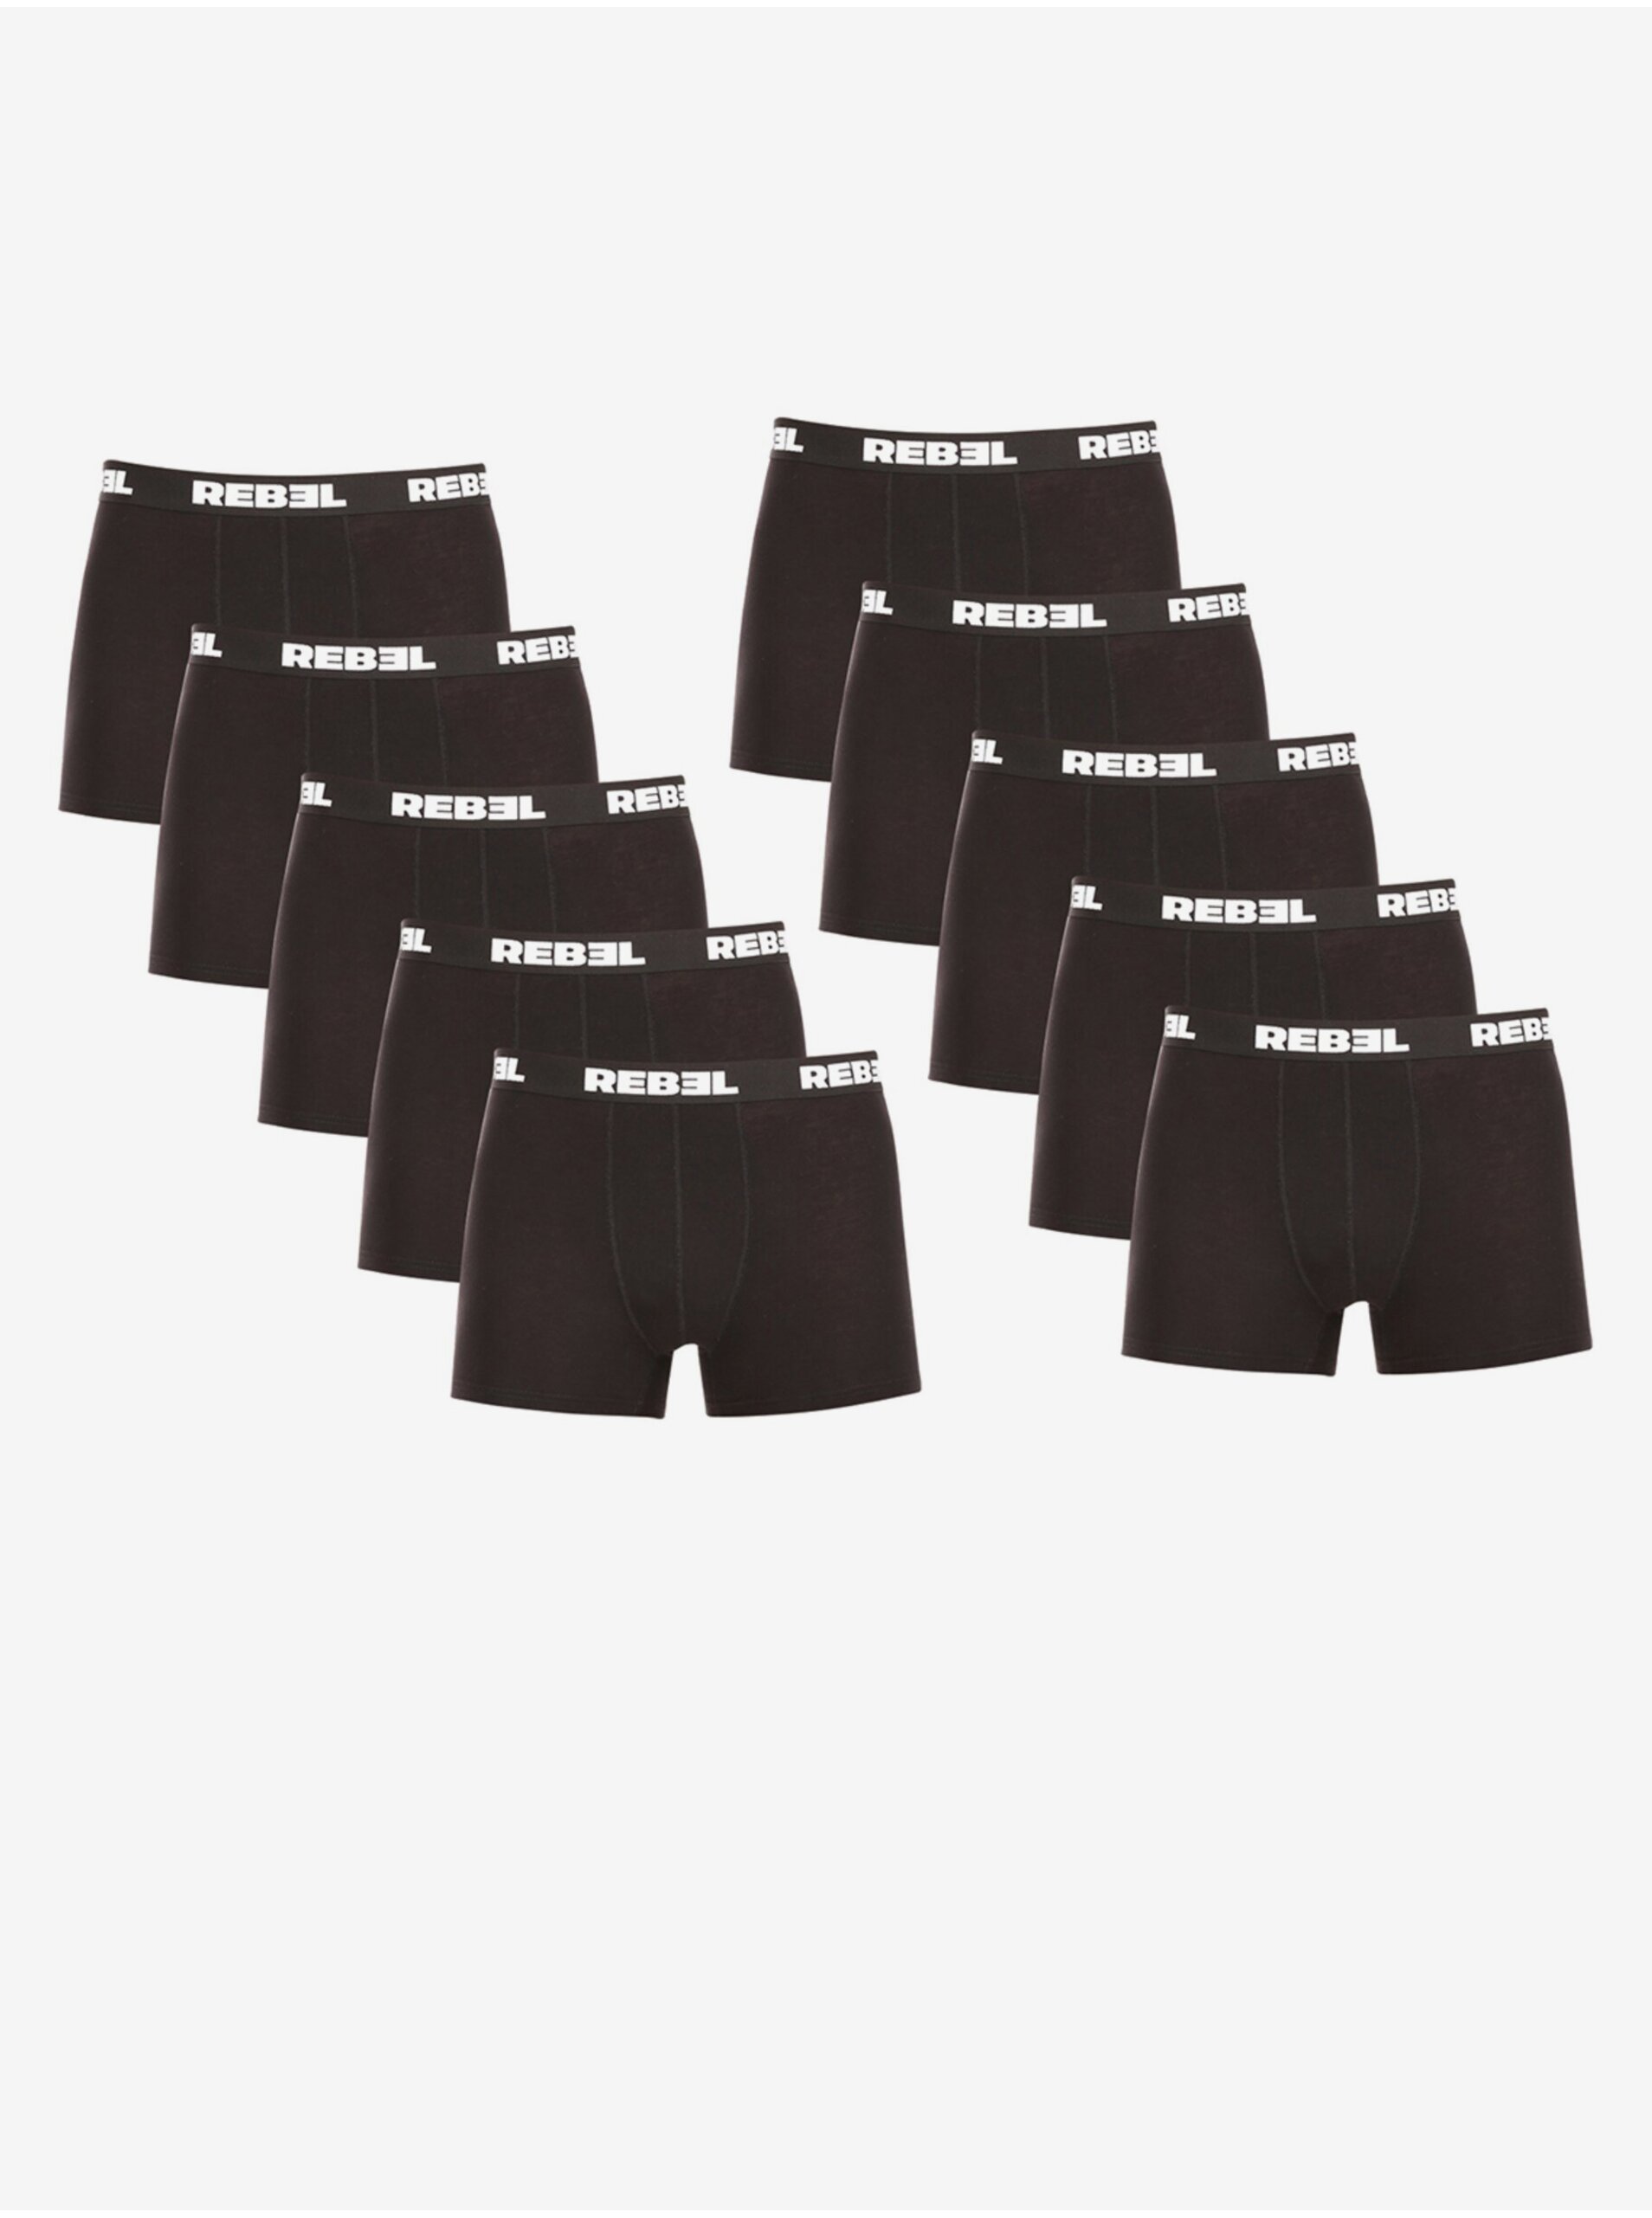 E-shop Sada deseti pánských boxerek v černé barvě Nedeto Rebel